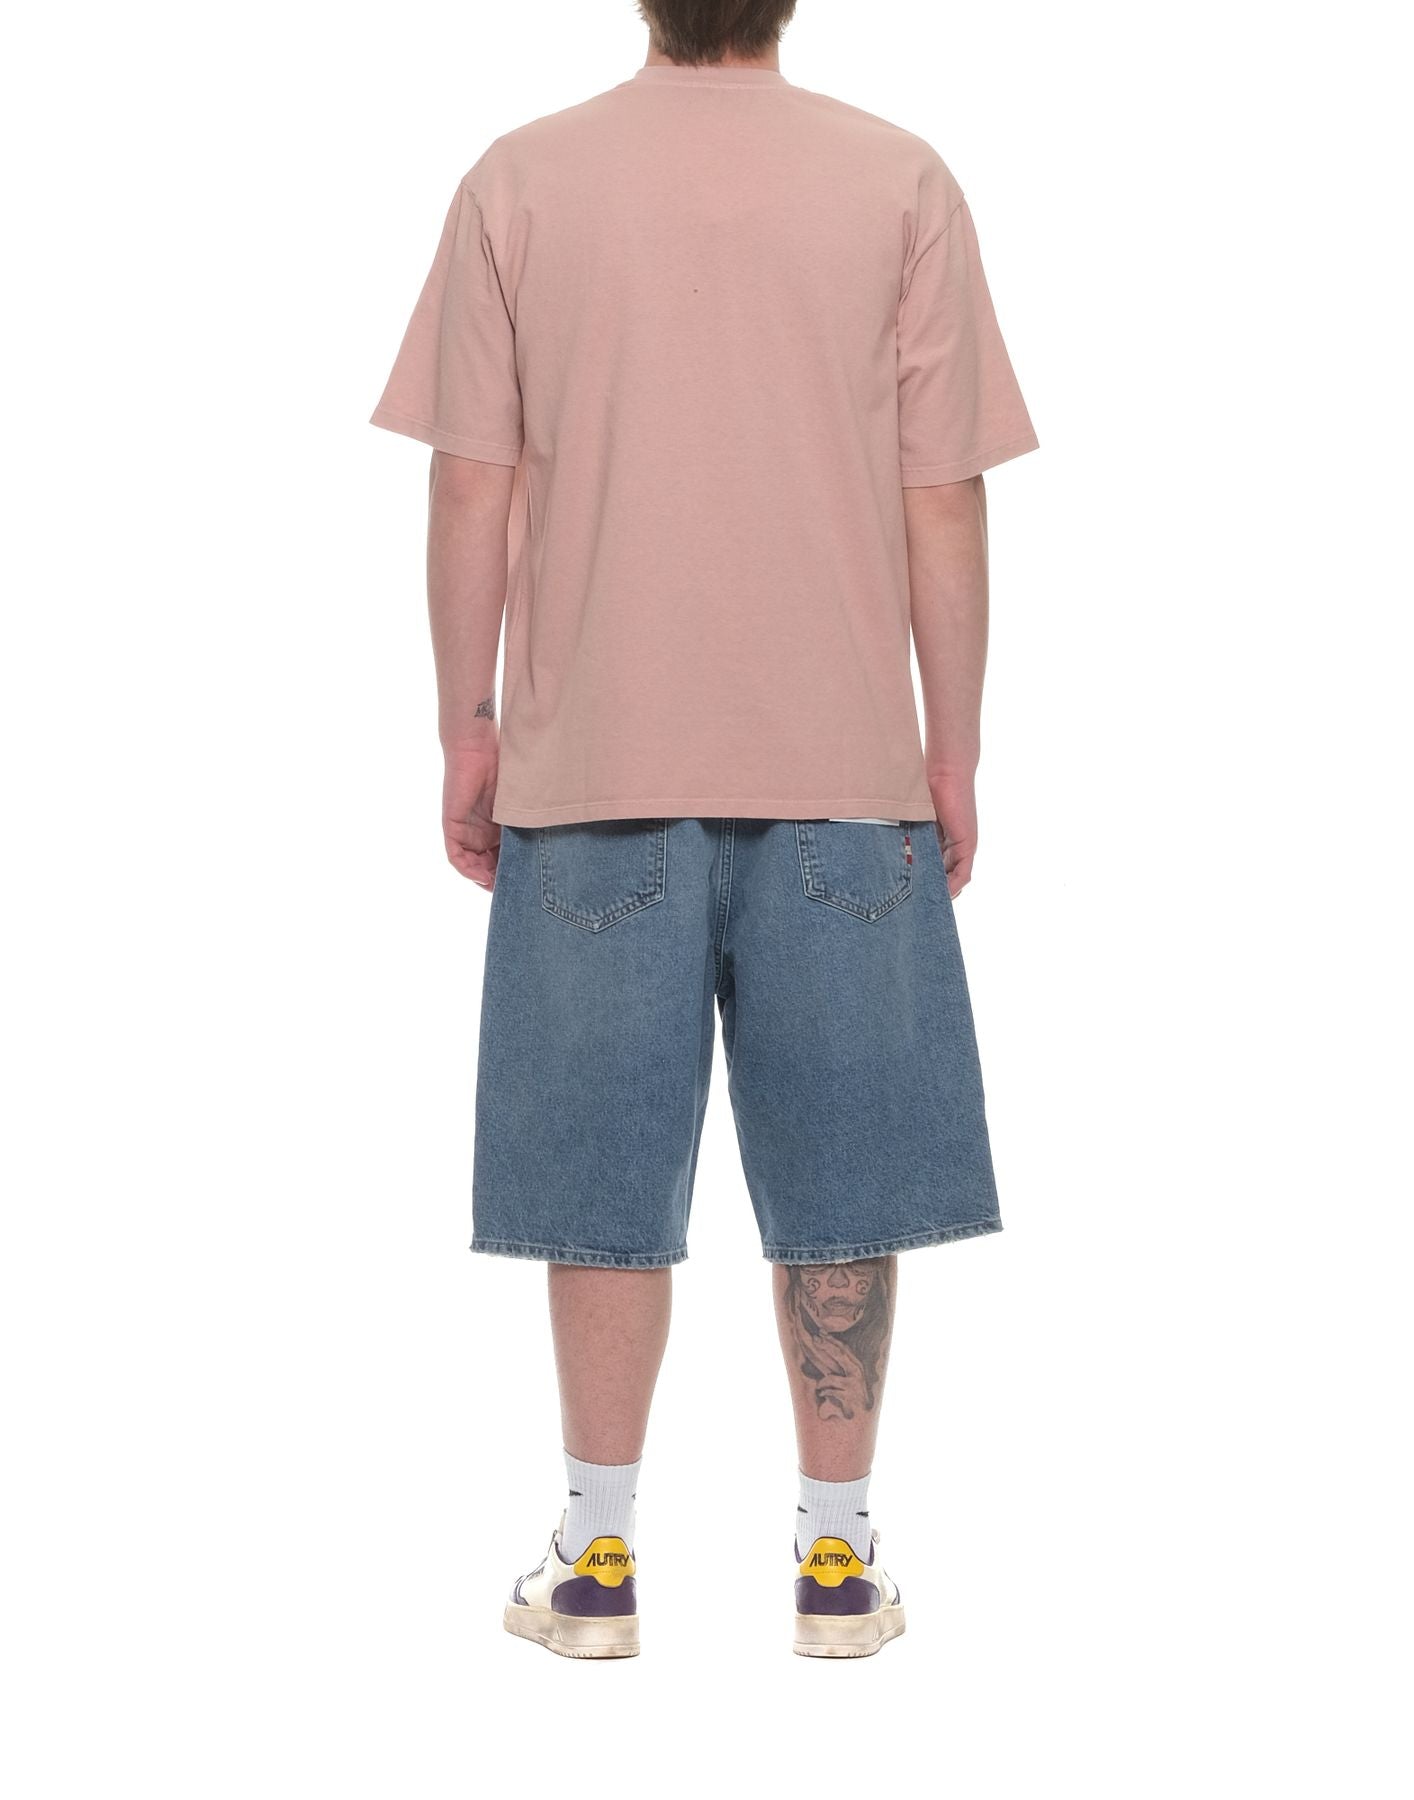 Camiseta hombre amx035cg45xxxxx rosa gris Amish